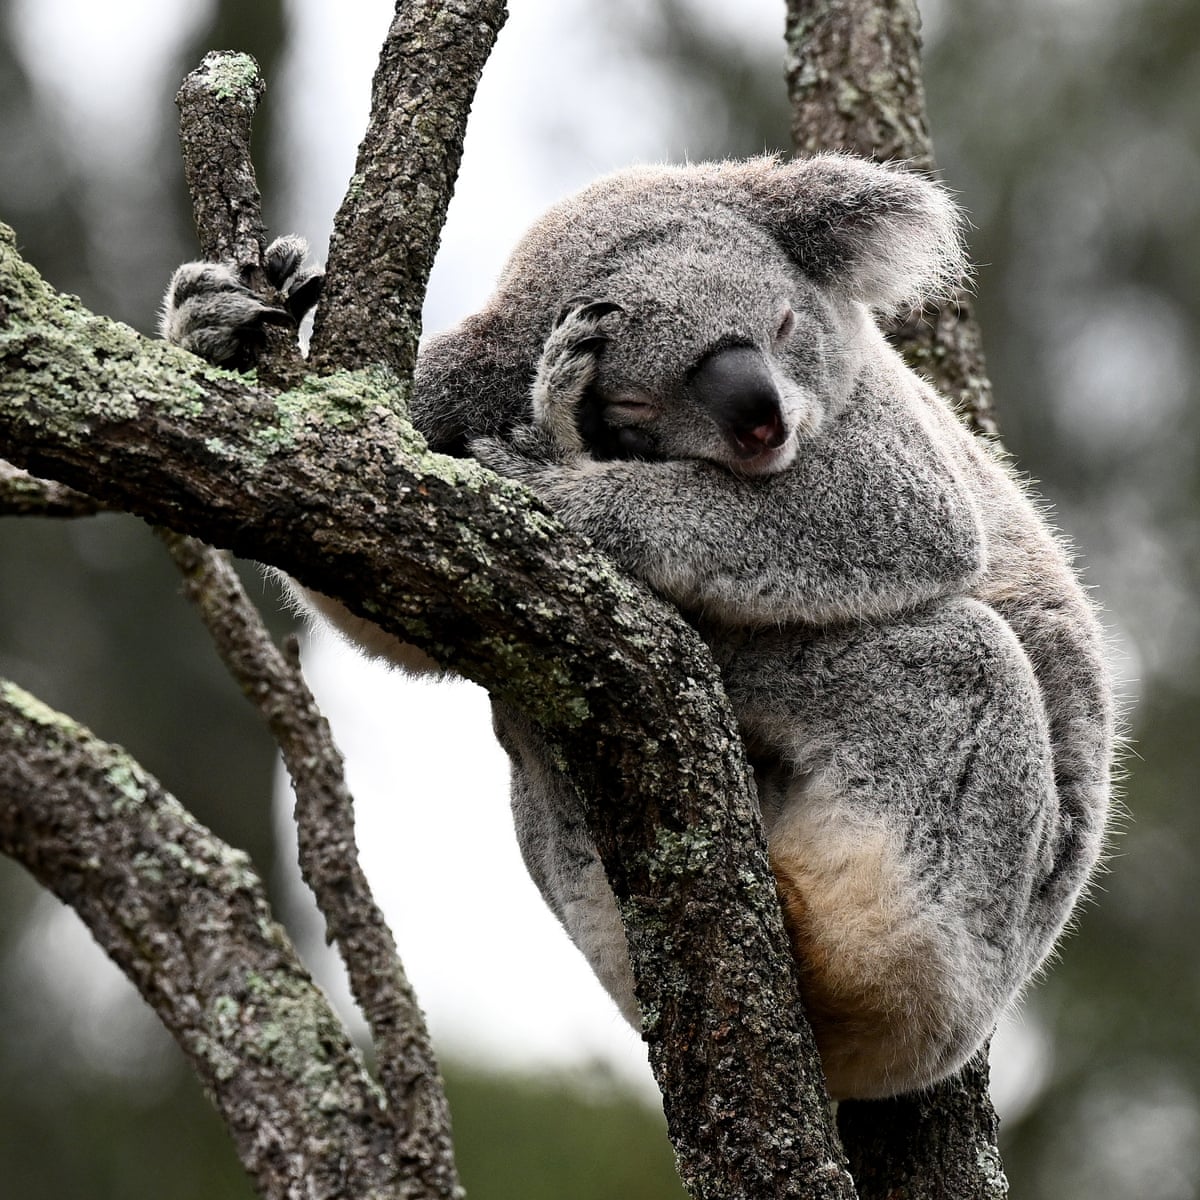 More than 40,000 hectares of nationally vital koala habitat marked